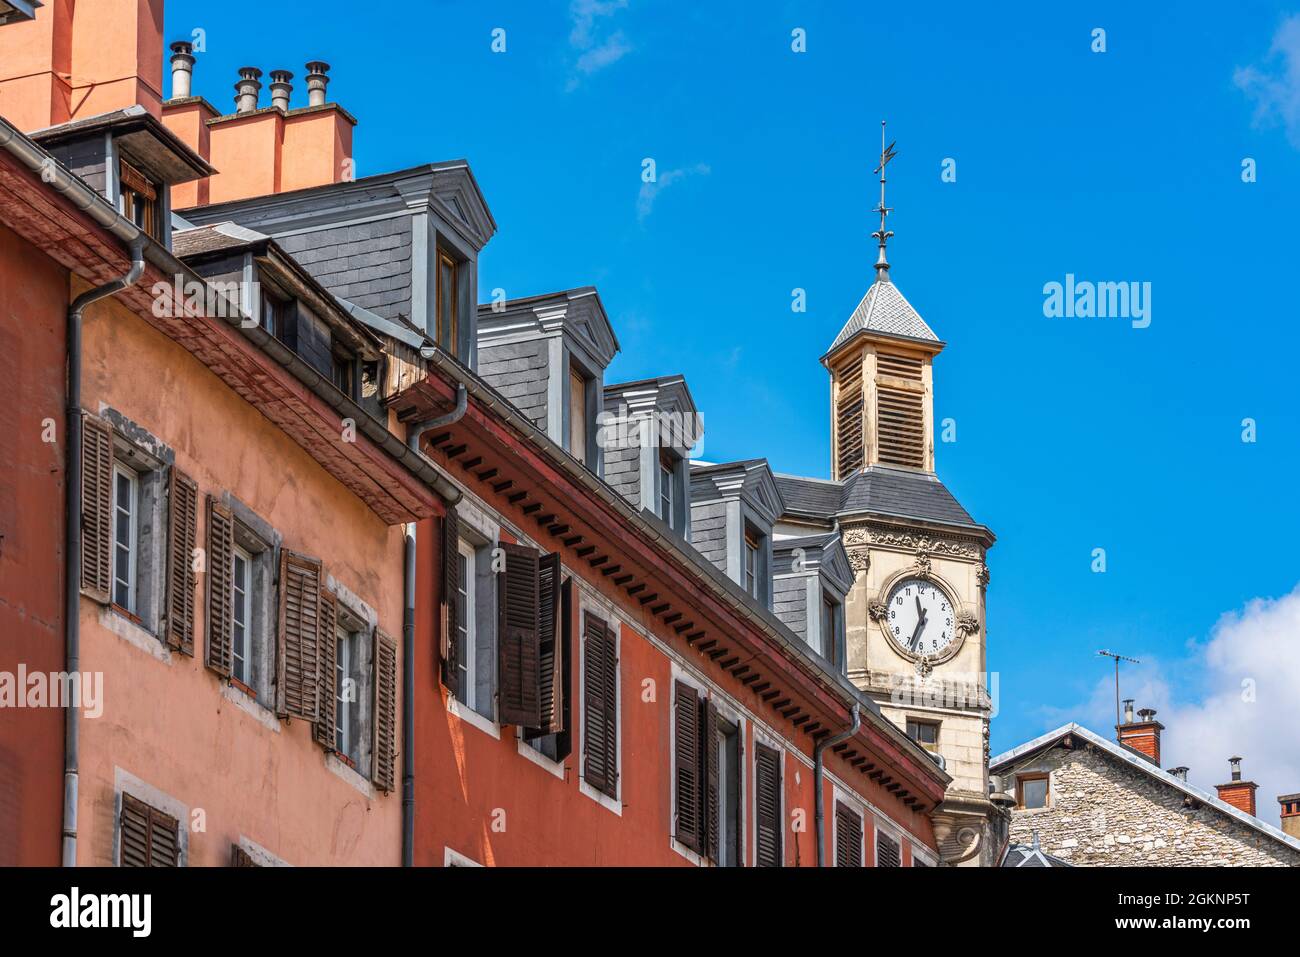 Klassische Dachfenster der Paläste von Chambery in Frankreich. Einer der größten Karillionen Europas ist im antiken Uhrenturm erhalten. Chambery Stockfoto